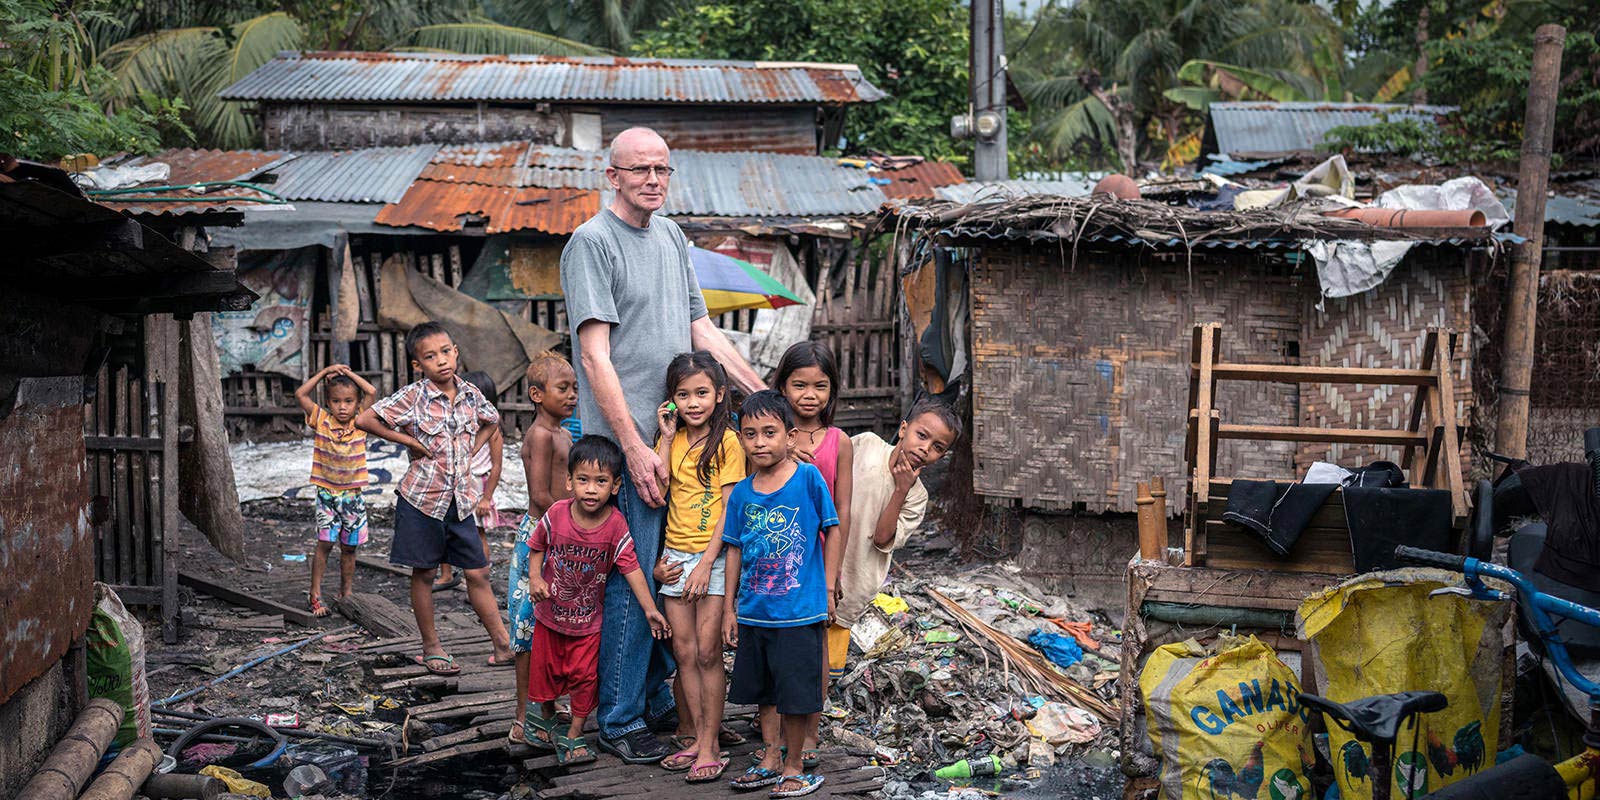  O. Heinz Kulüke, Werbista, z dziećmi w slumsach na wyspie Cebu, Filipiny.